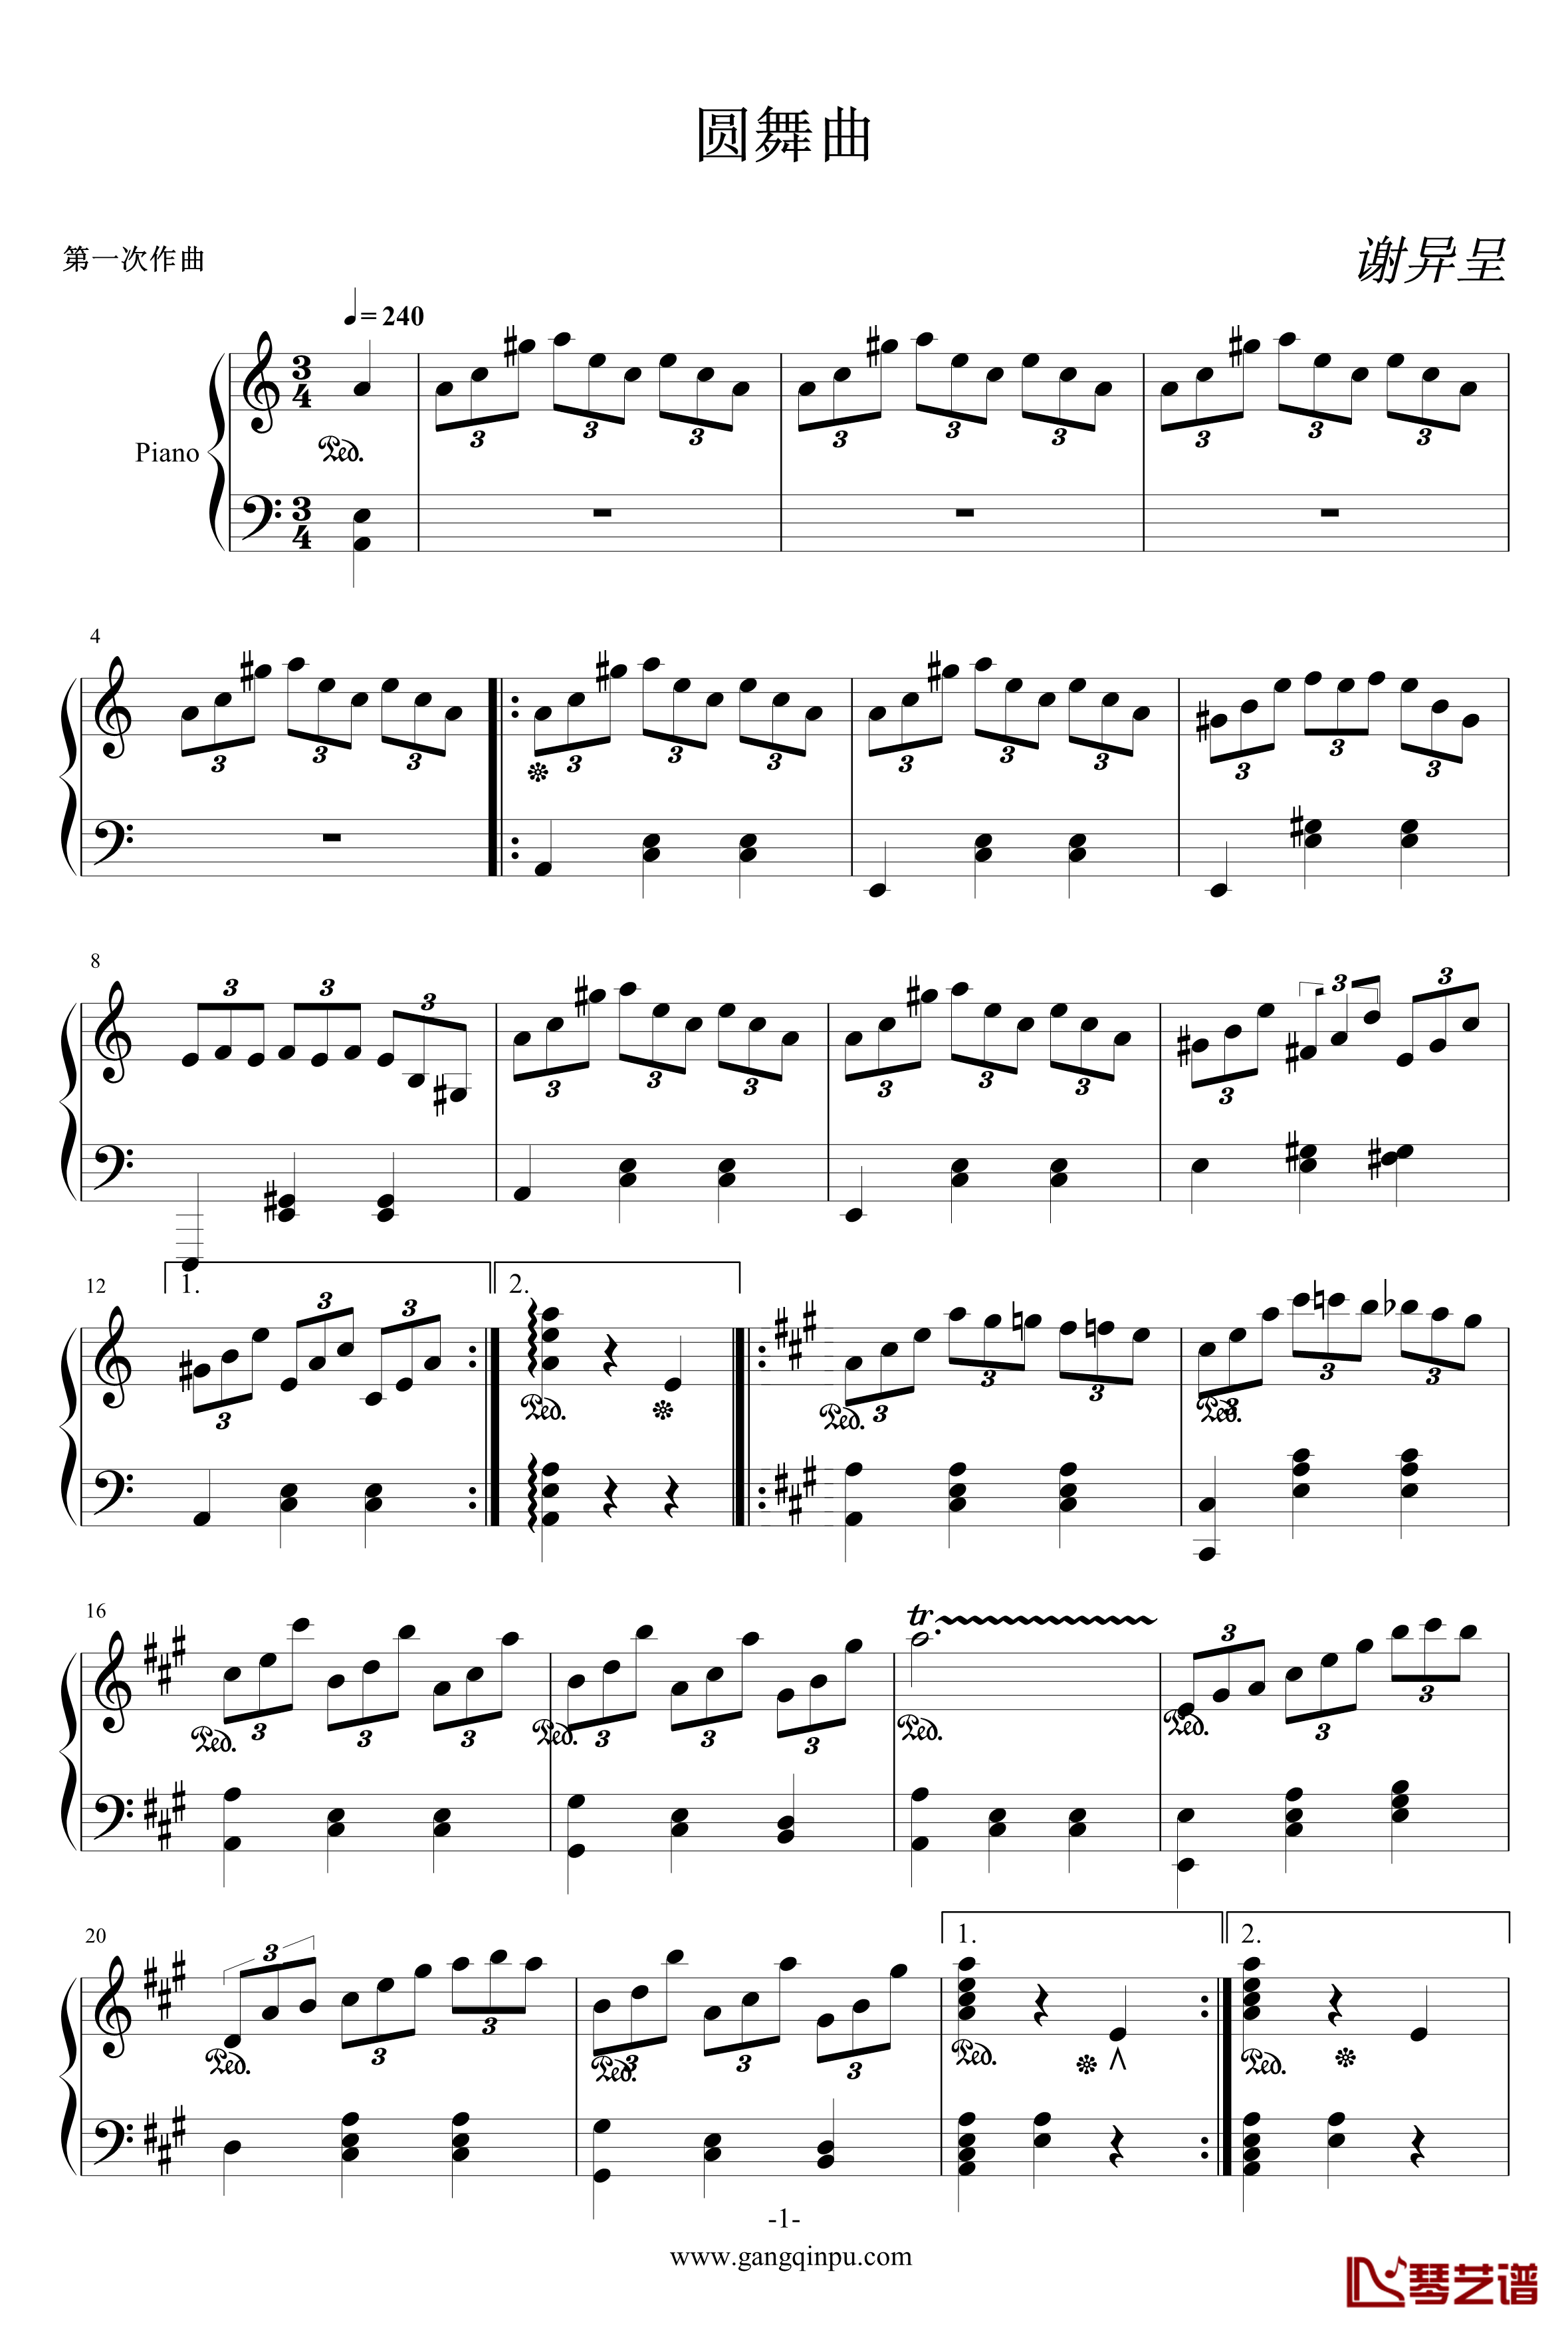 圆舞曲钢琴谱-straightforward1